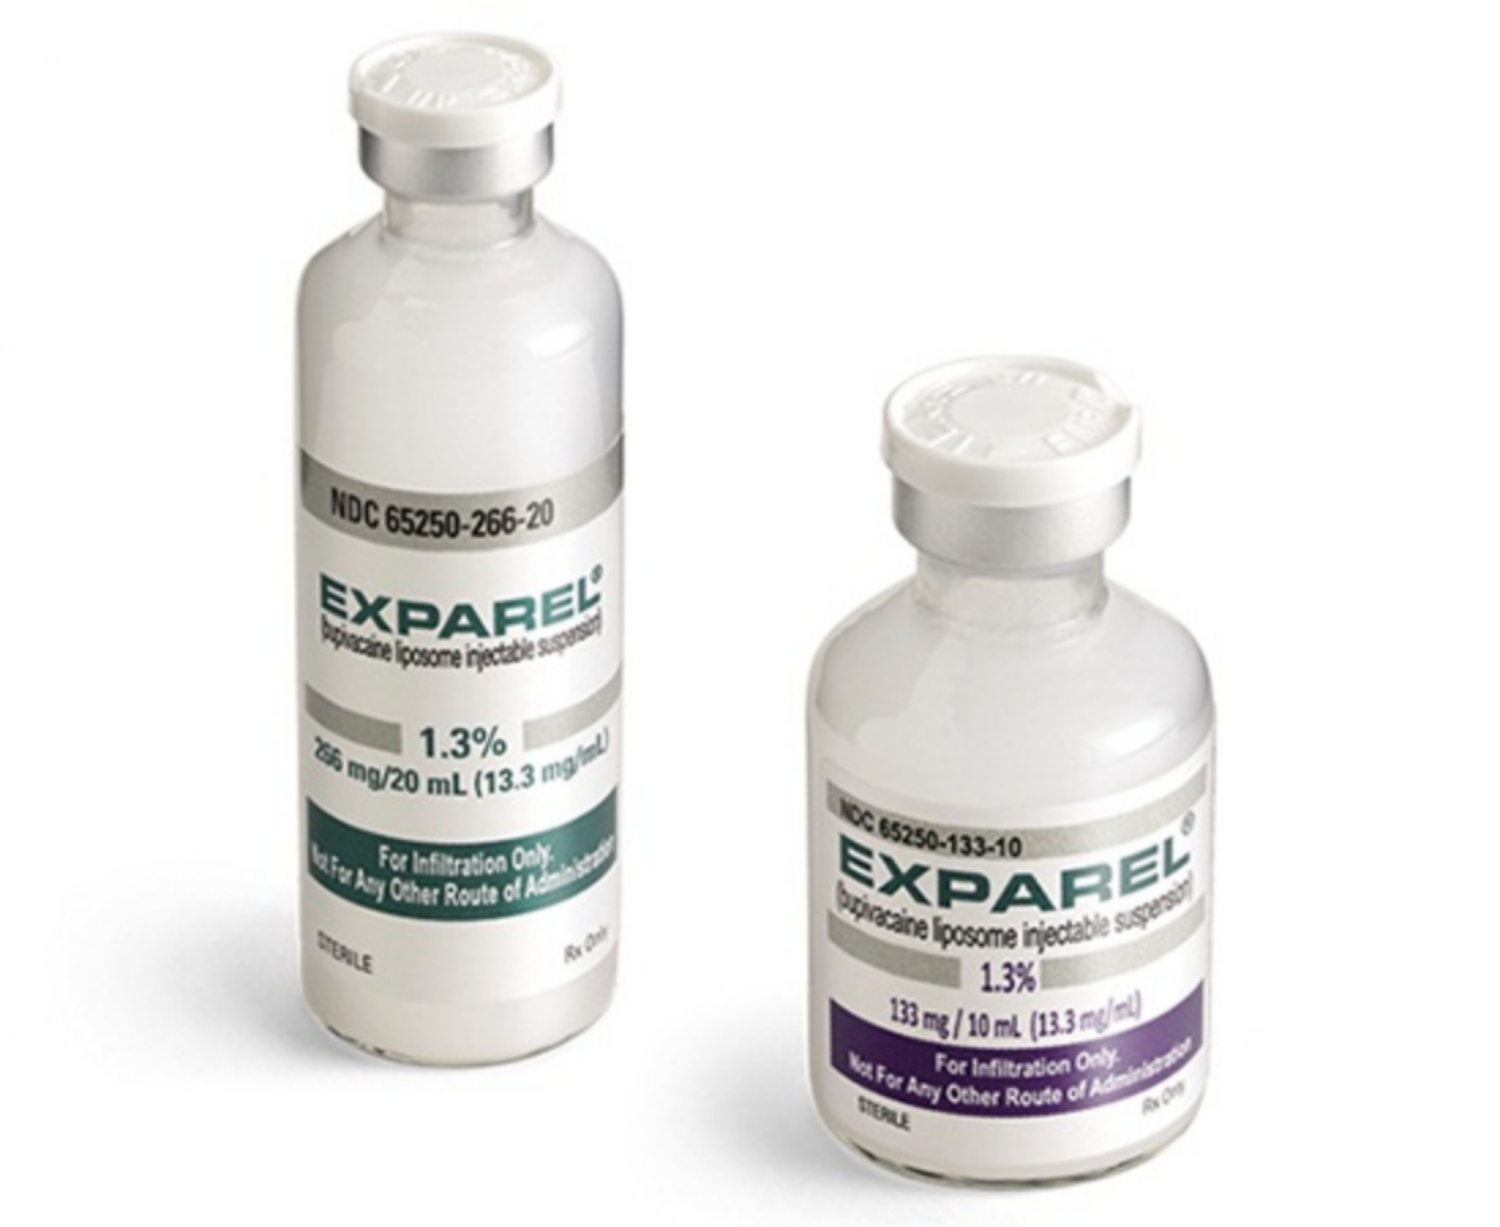 Hướng dẫn sử dụng Exparel (bupivacaine) giảm đau sau phẫu thuật ngực, bụng